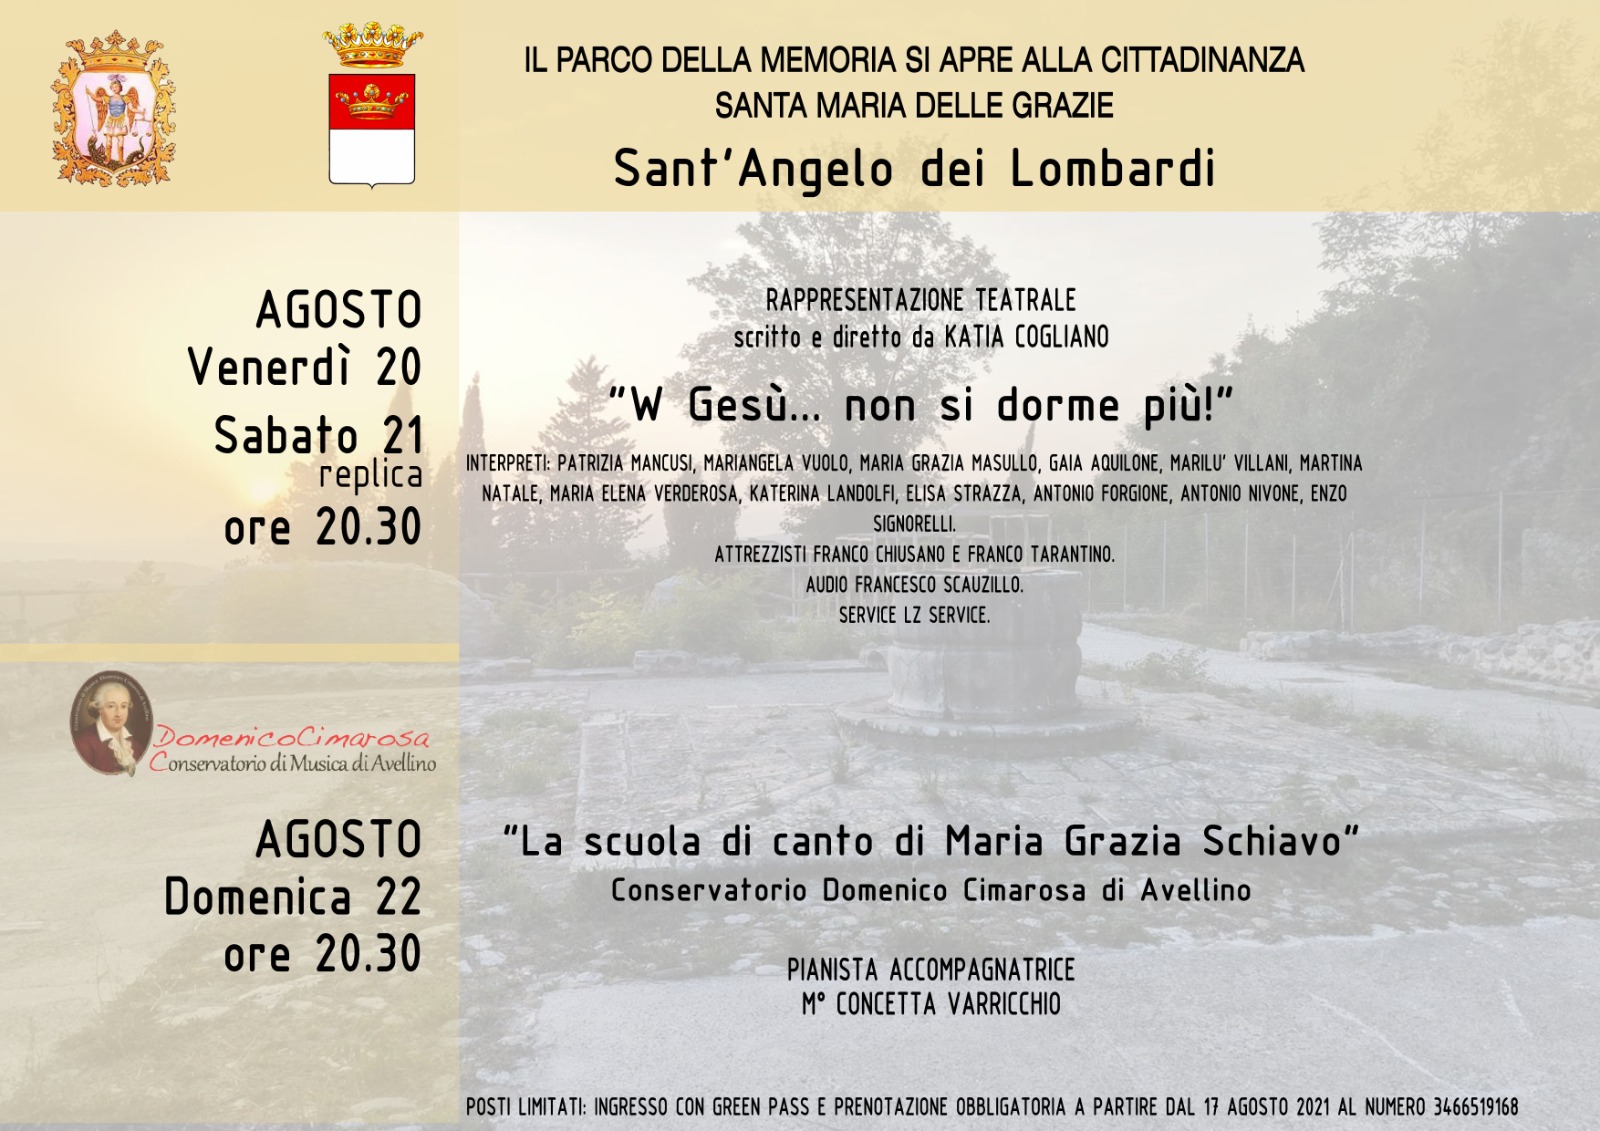 S.Angelo dei Lombardi| Teatro e musica al Parco della Memoria, 3 appuntamenti nel weekend